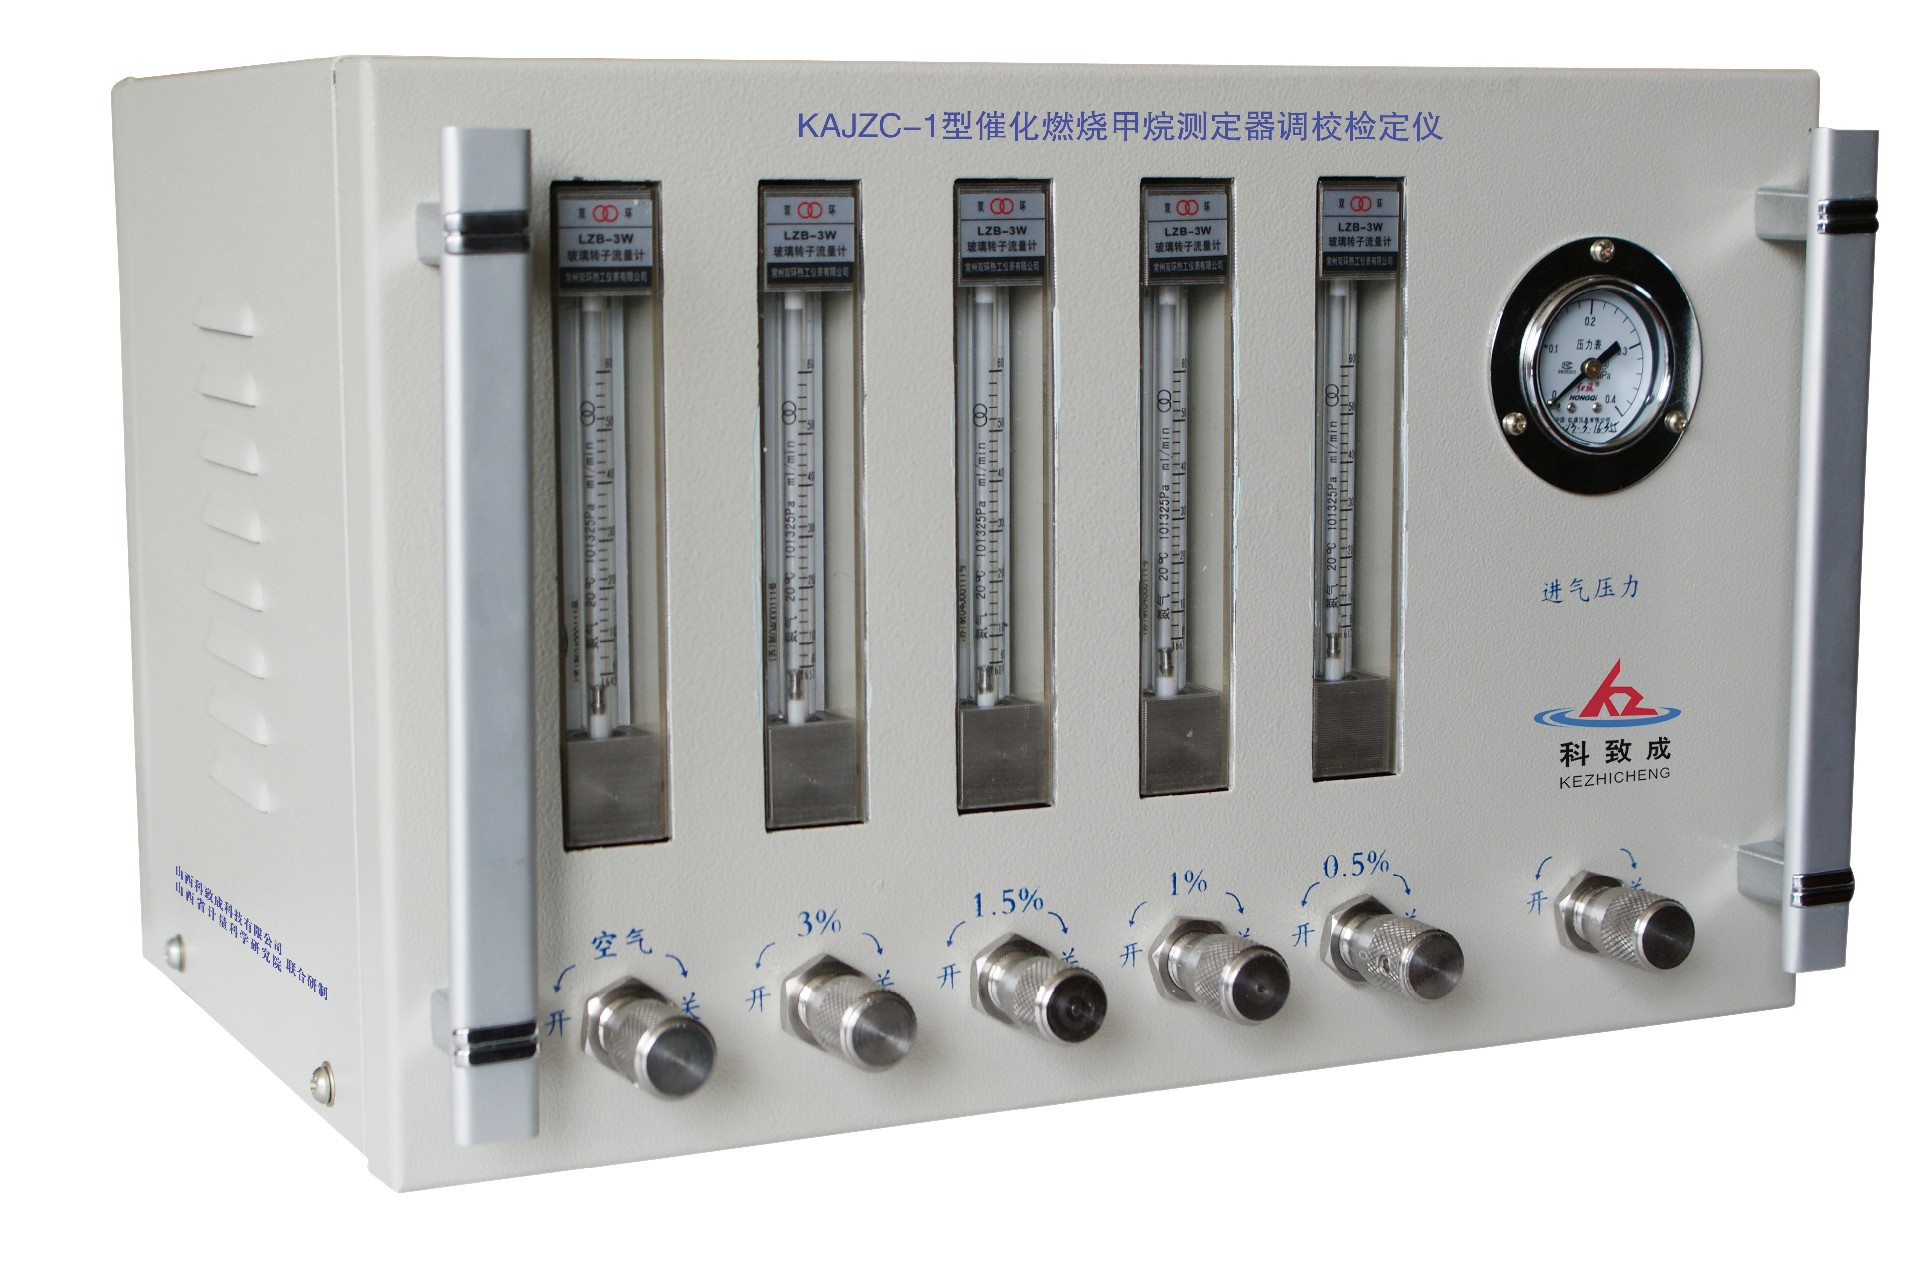 朔州KAJZC-1型催化燃烧甲烷测定器调校检定仪